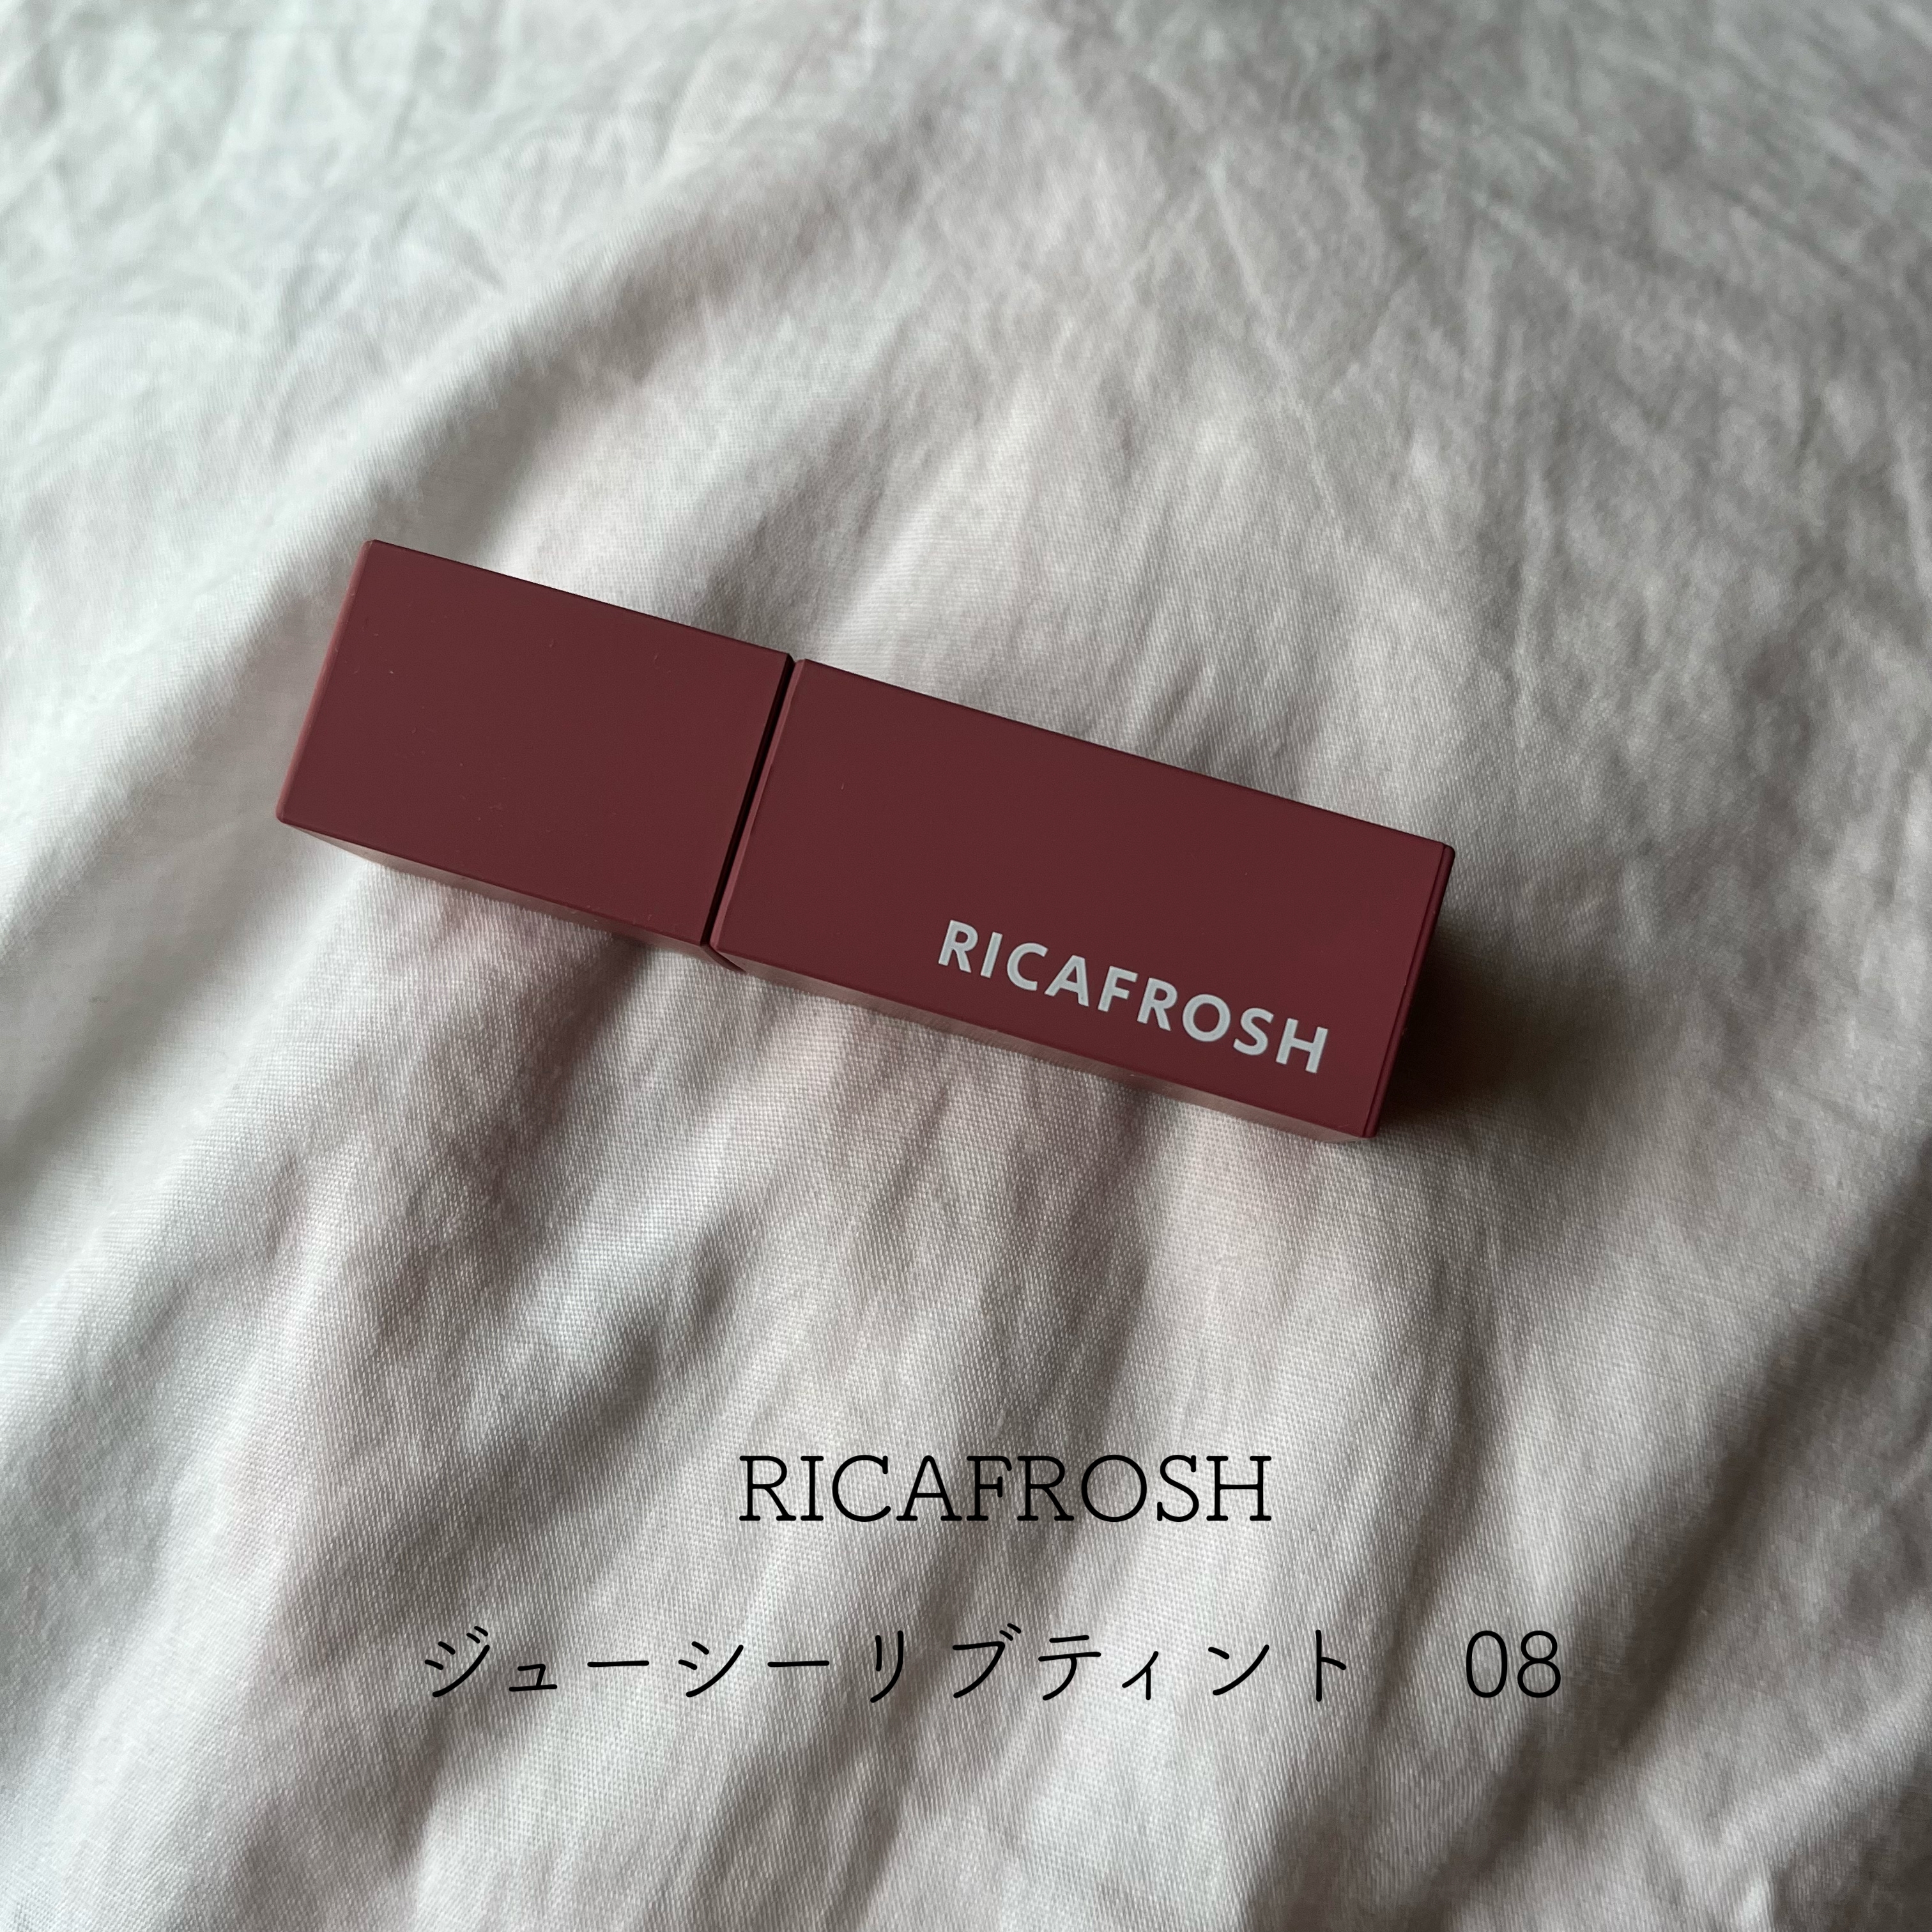 RICAFROSH(リカフロッシュ) ジューシーリブティントの良い点・メリットに関するとあさんの口コミ画像1